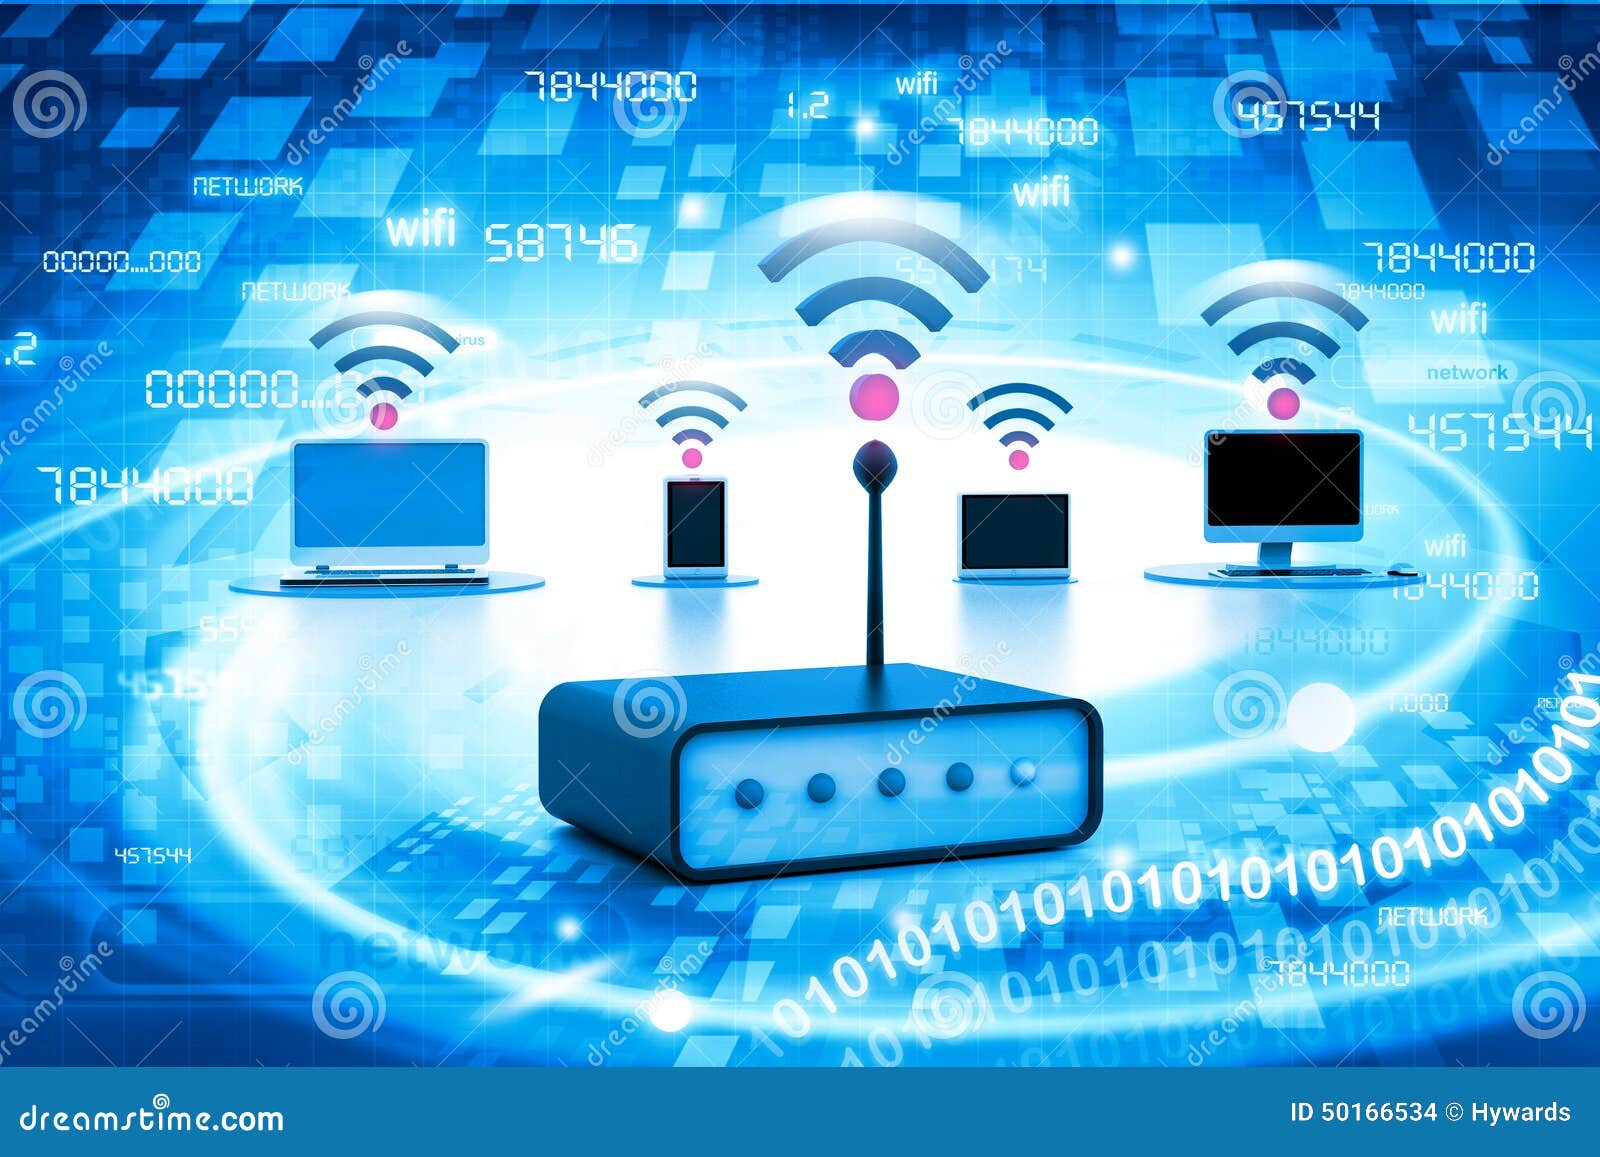 Безопасность беспроводных сетей. Беспроводной интернет. Беспроводные сети Wi-Fi. Безопасность беспроводной сети. Технология WIFI.